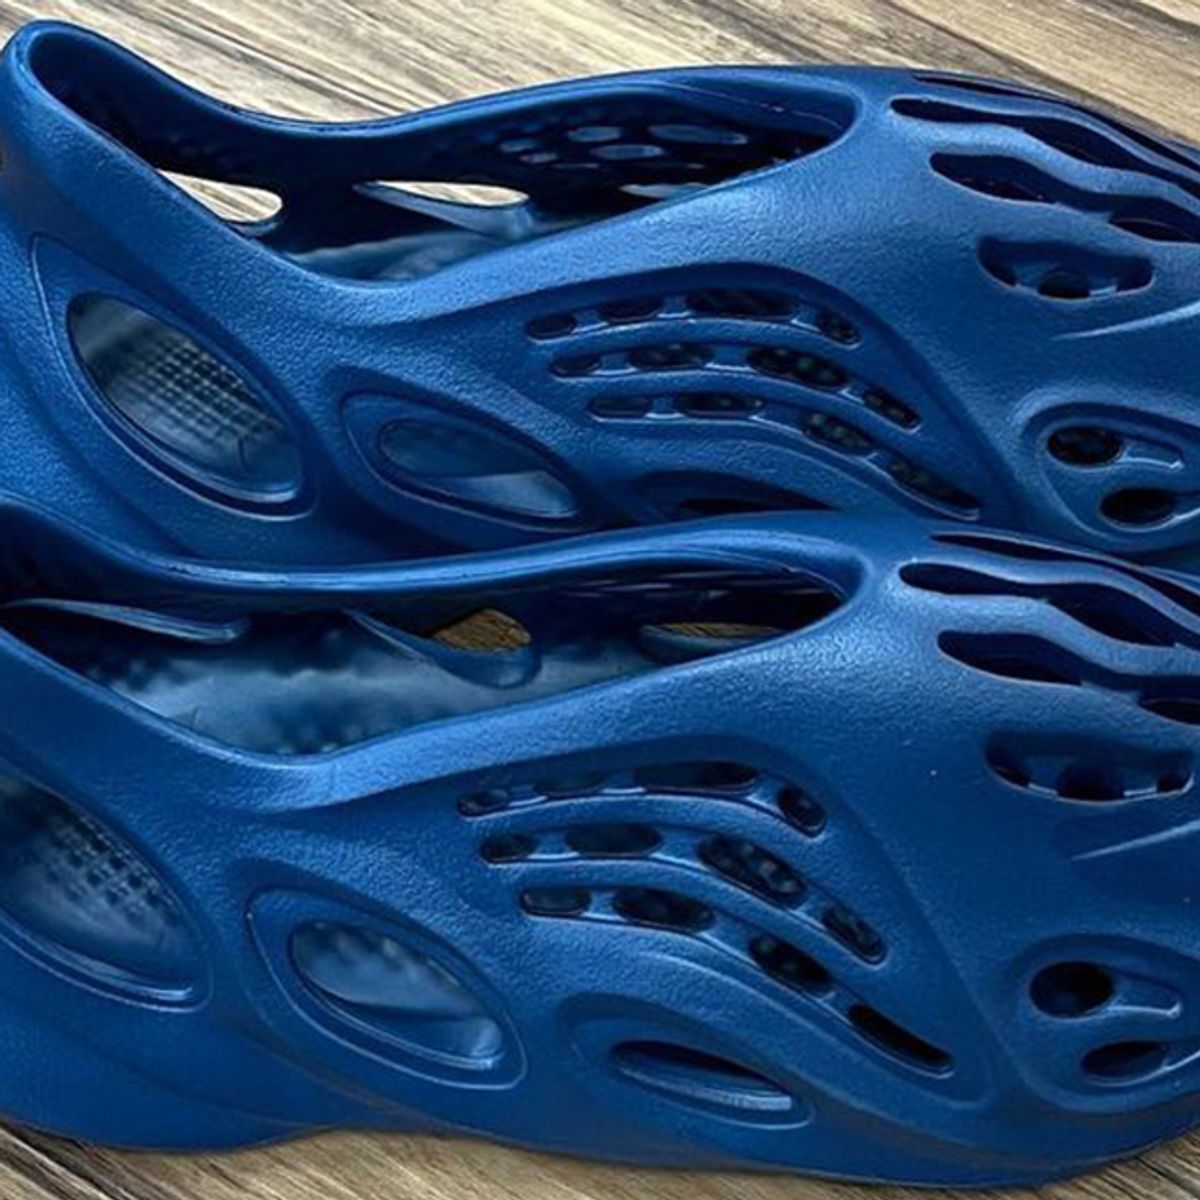 Release Info: adidas Yeezy Foam Runner Navy Blue - Sneaker Freaker